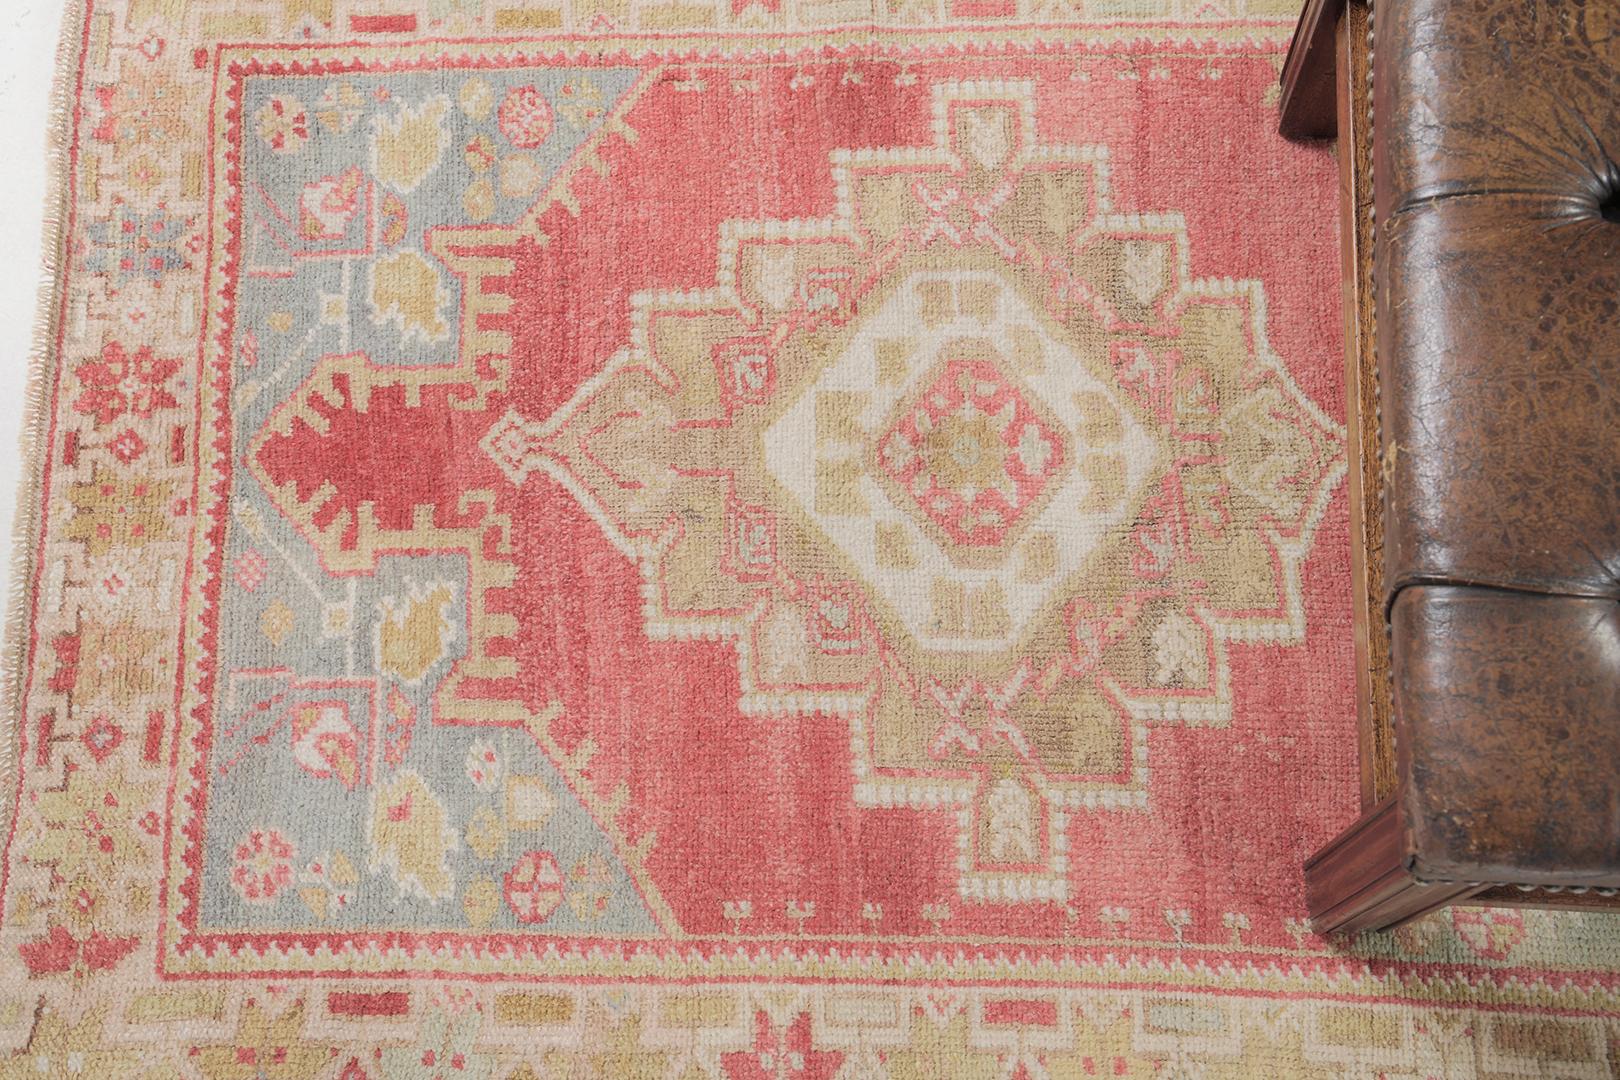 Maden ist ein wunderschöner Flor aus gewebter Wolle, der Ihren Raum in ein traditionelles und ethnisches Interieur verwandeln kann. Kennen Sie ihre Geschichte und gestalten Sie Ihr Haus ästhetisch. Türkisch-anatolische Teppiche verweben Farbstoffe